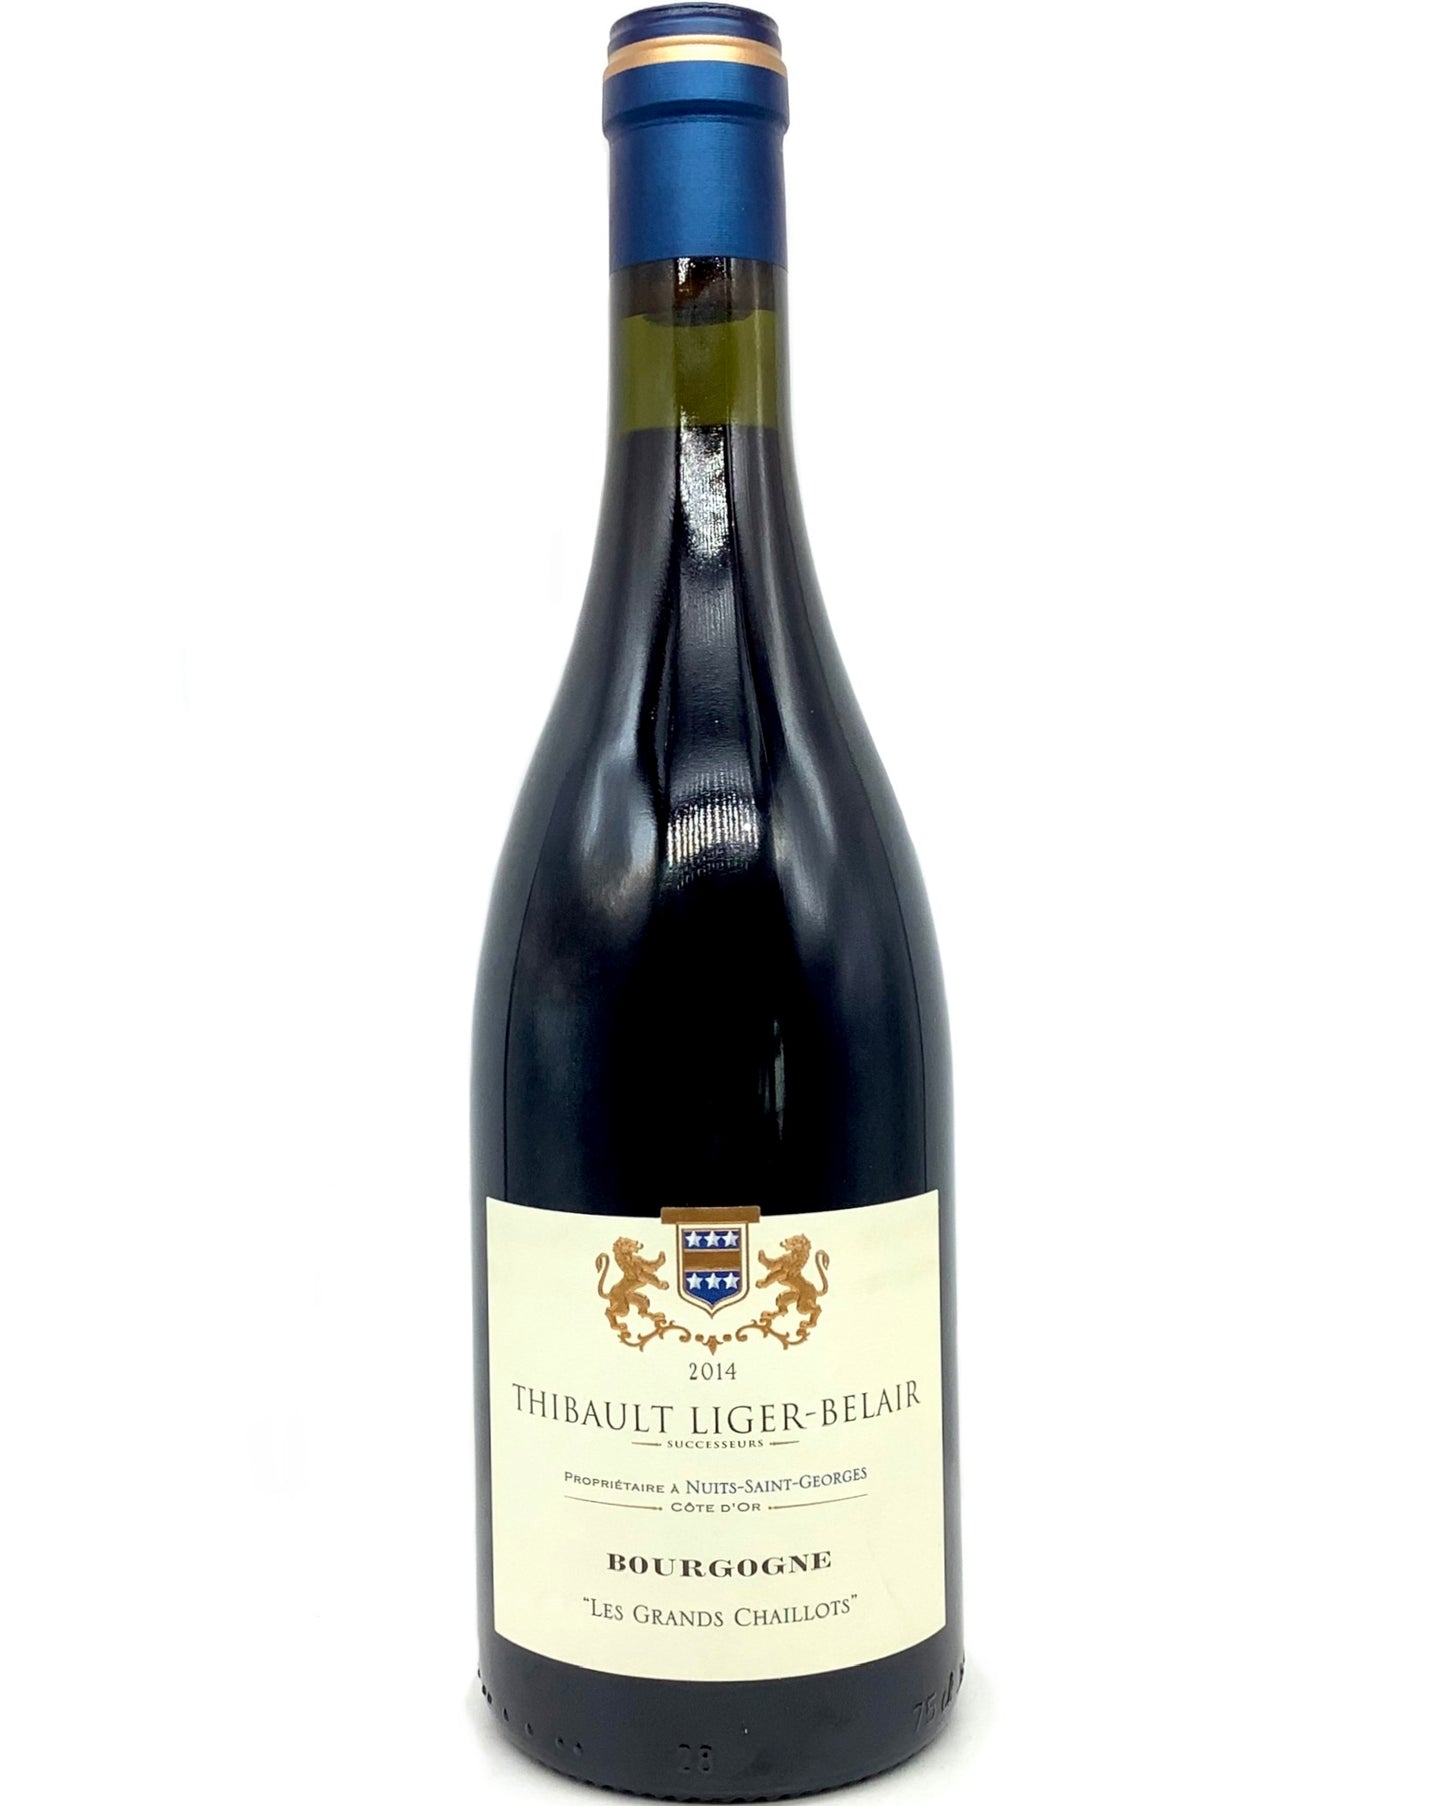 Thibault Liger-Belair, Pinot Noir, Bourgogne "Les Grands Chaillots" Nuits-Saint-Georges, Côte de Nuits, Burgundy, France 2014